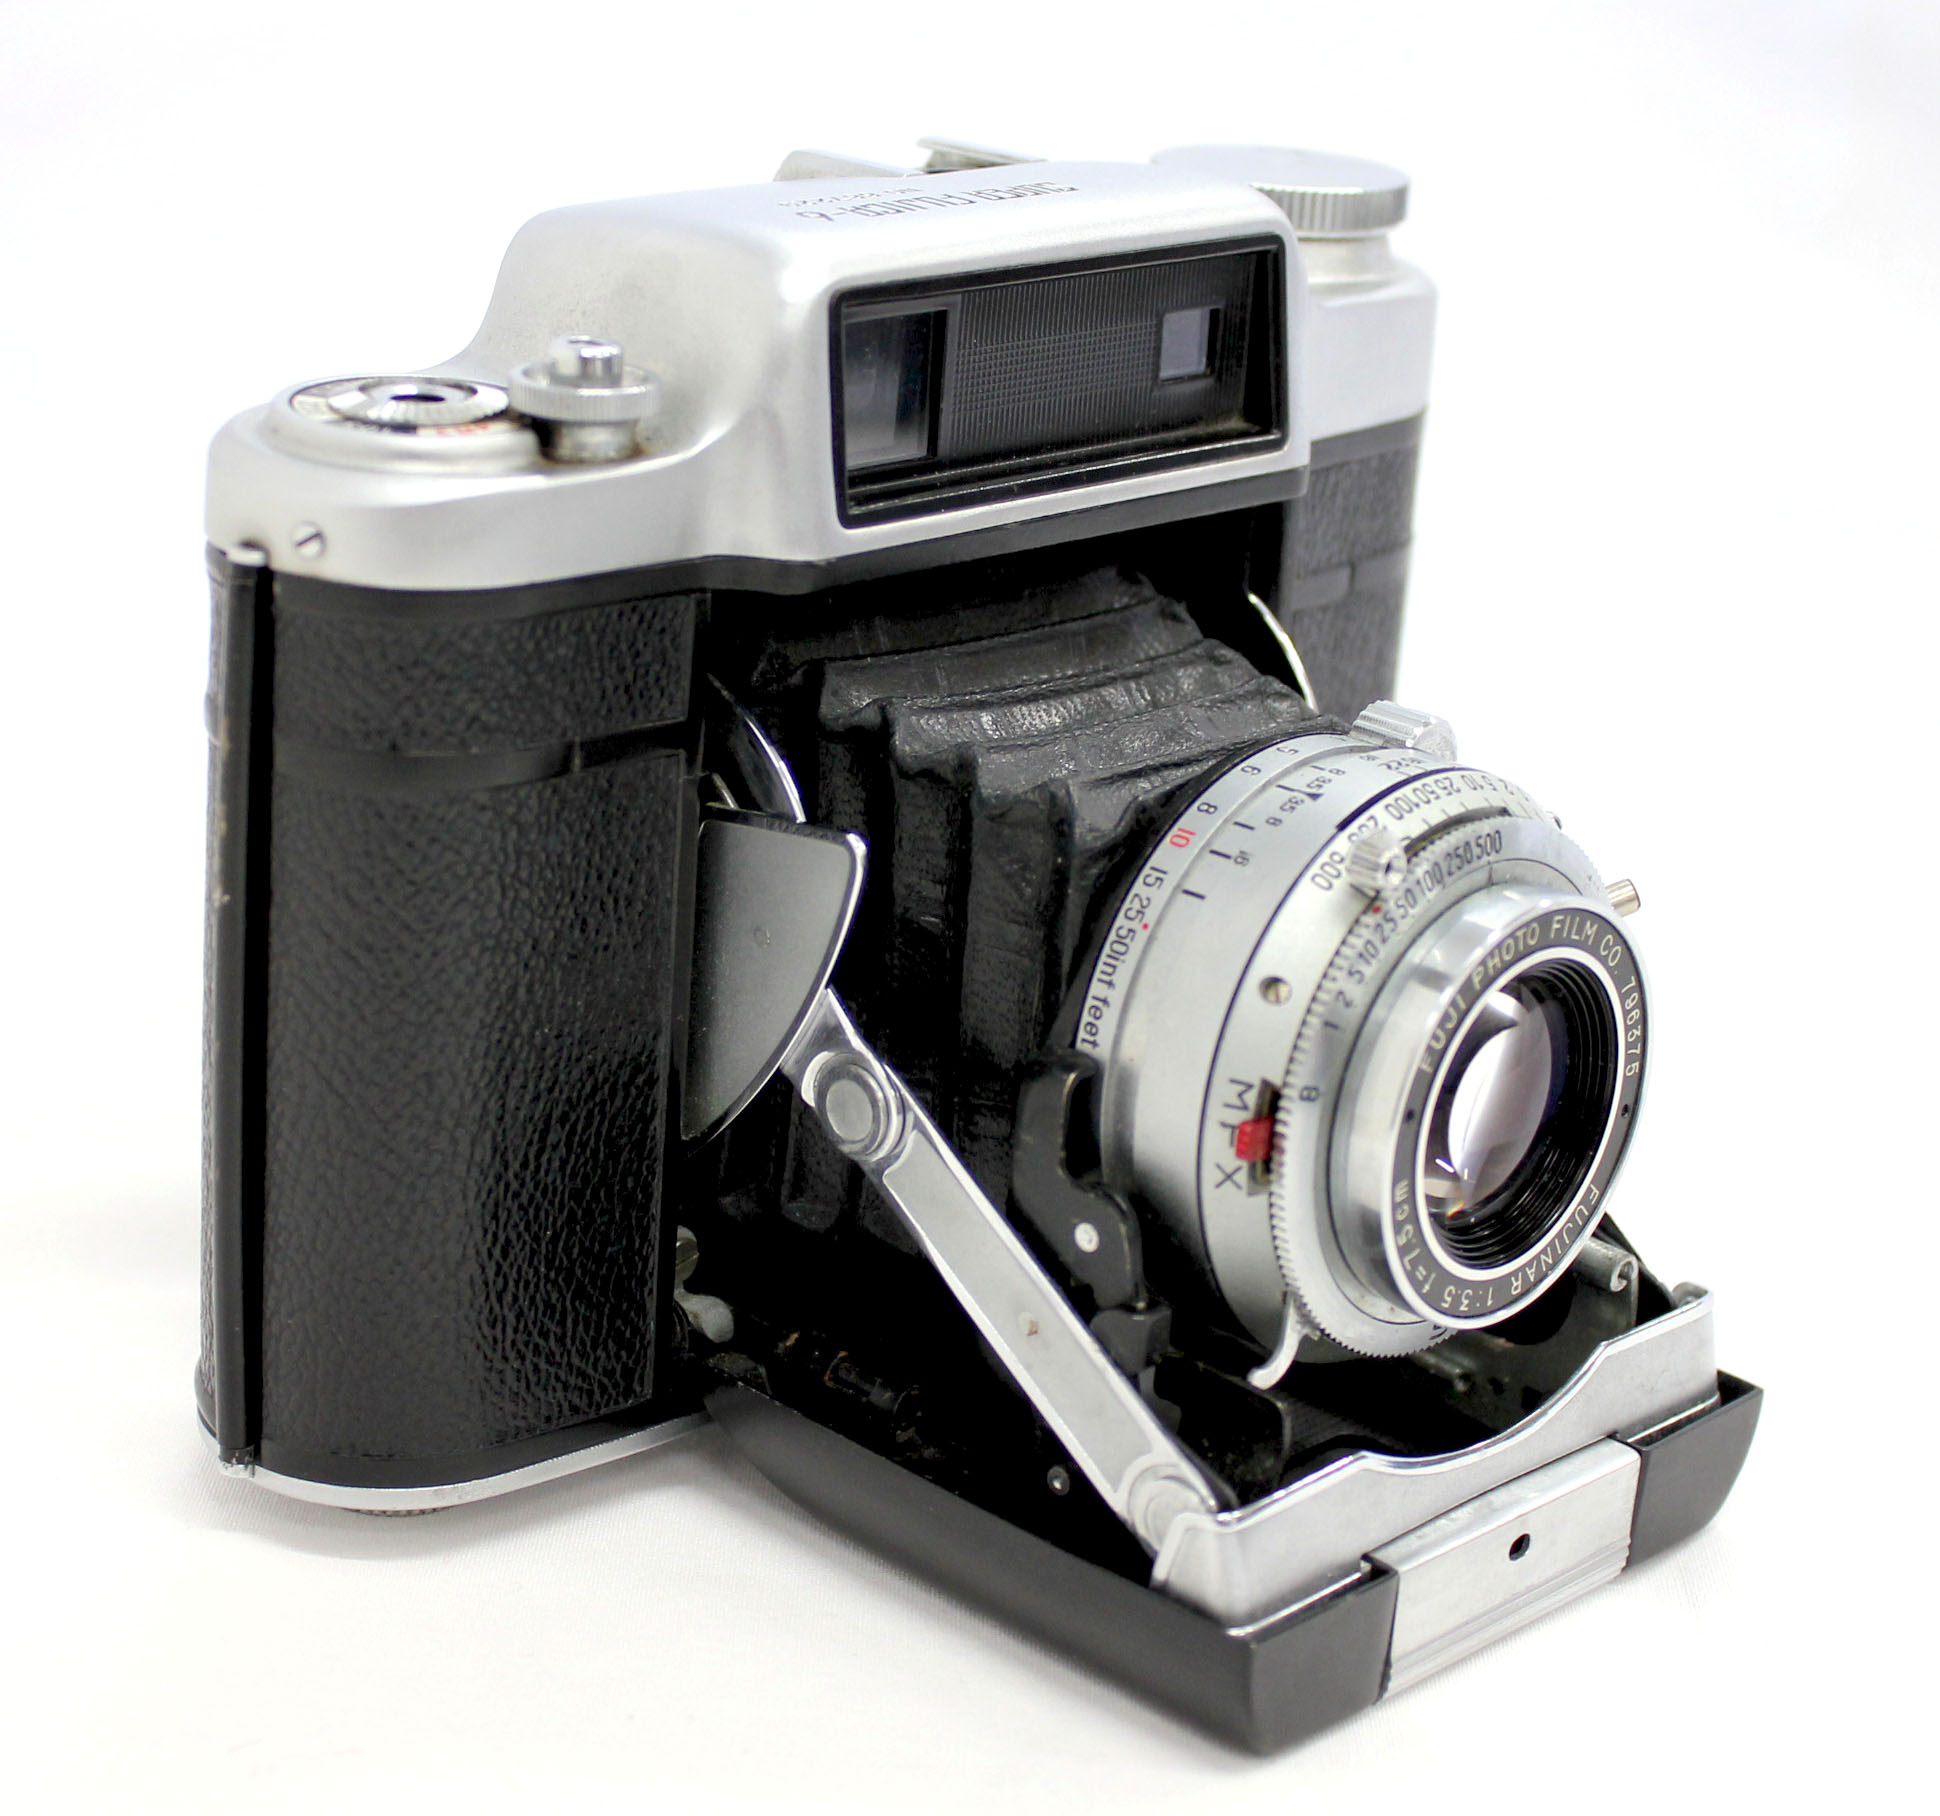  Fuji Super Fujica-6 Six 6x6 Medium Format Film Camera with Fujinar 75mm F/3.5 from Japan Photo 2